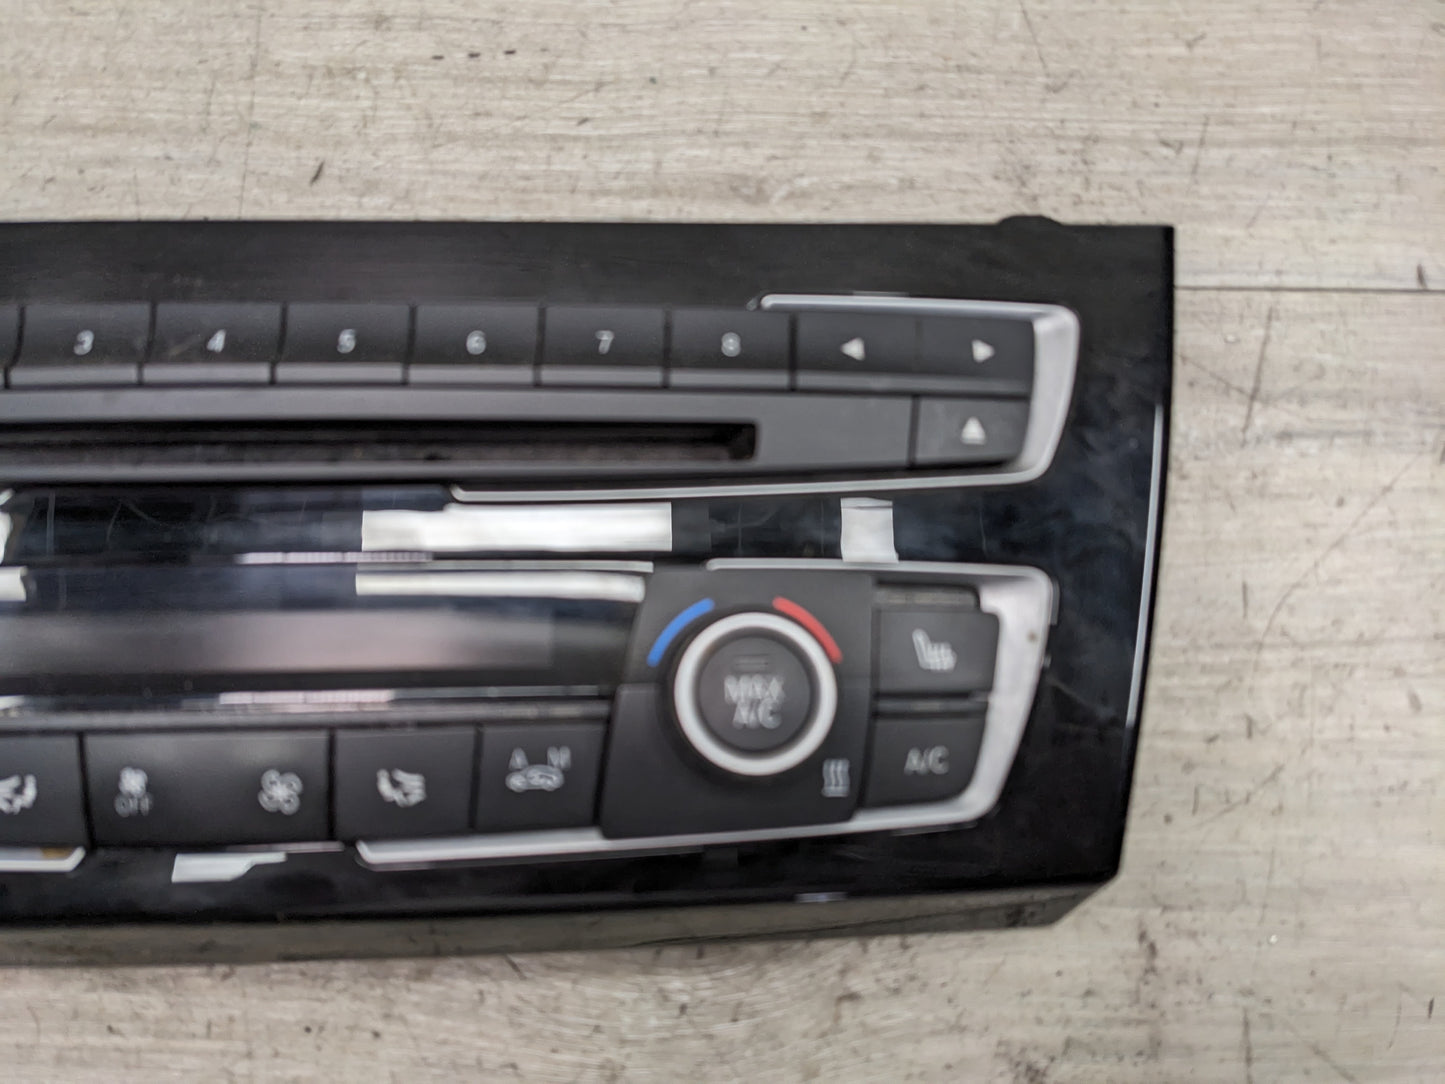 12-16 OEM BMW F22 F32 F30 F36 M4 M3 AC Heater Control Panel Radio Media Buttons